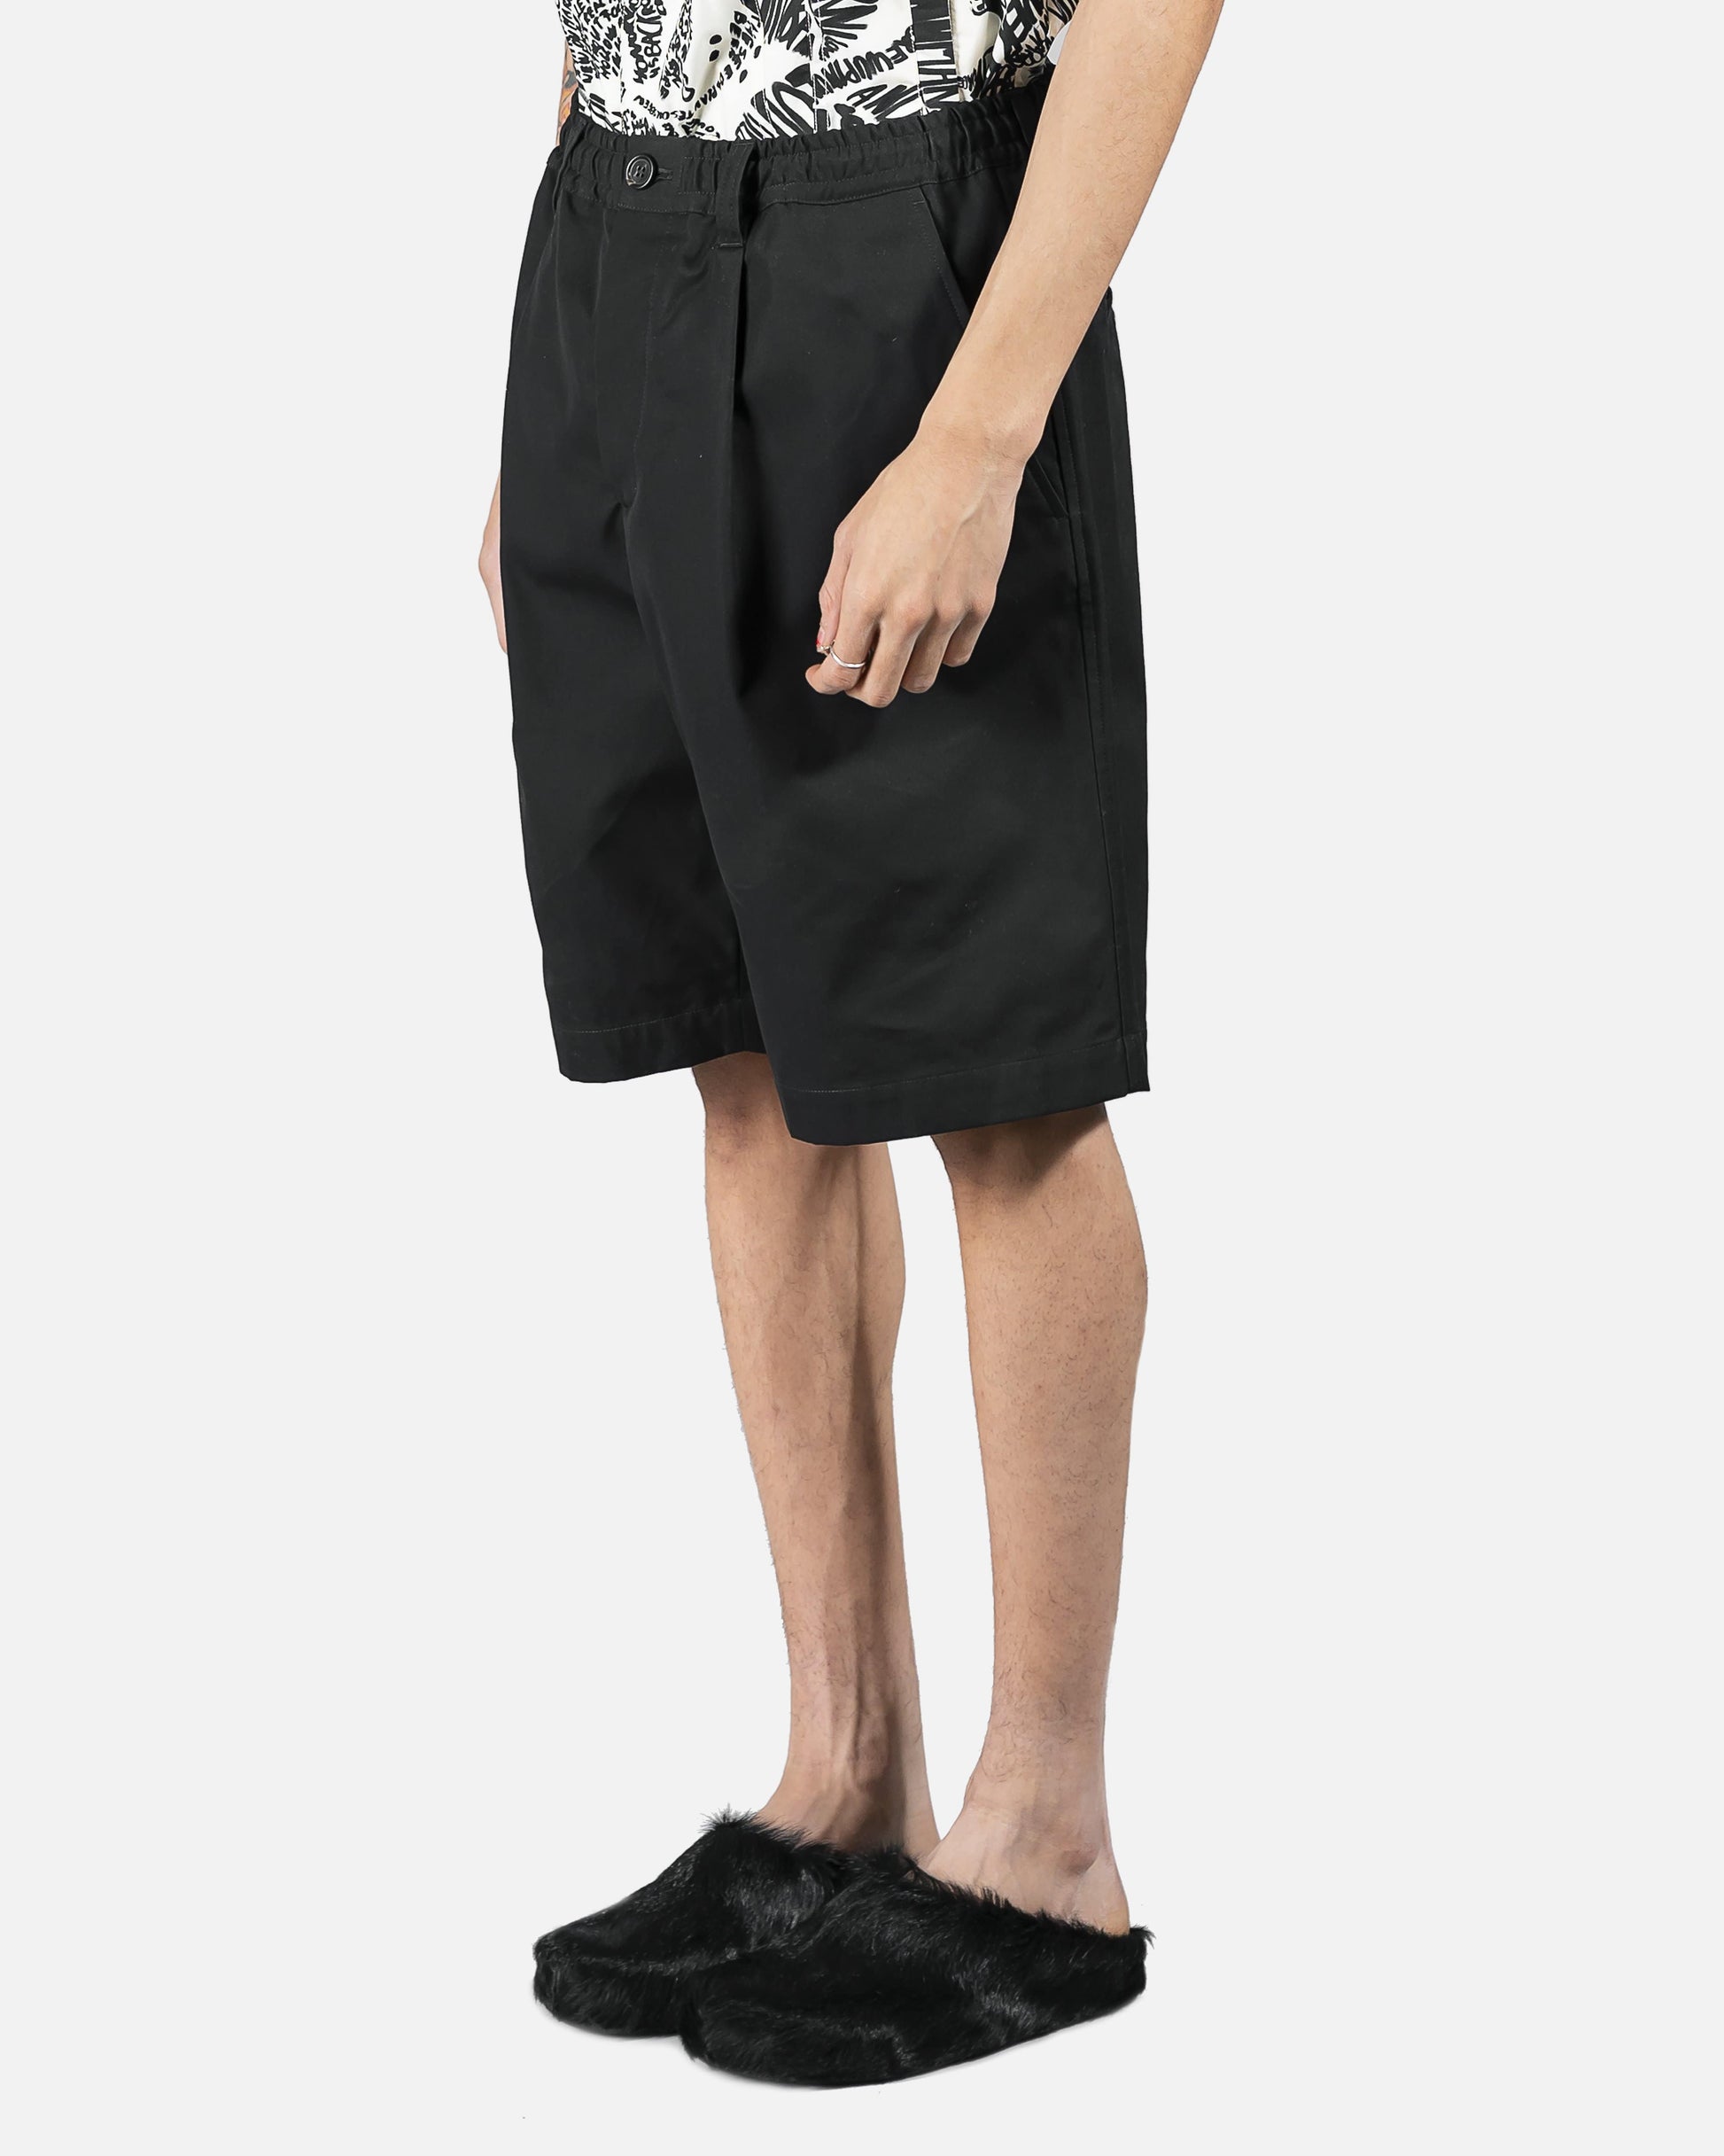 Marni Men's Shorts Classic Shorts in Black